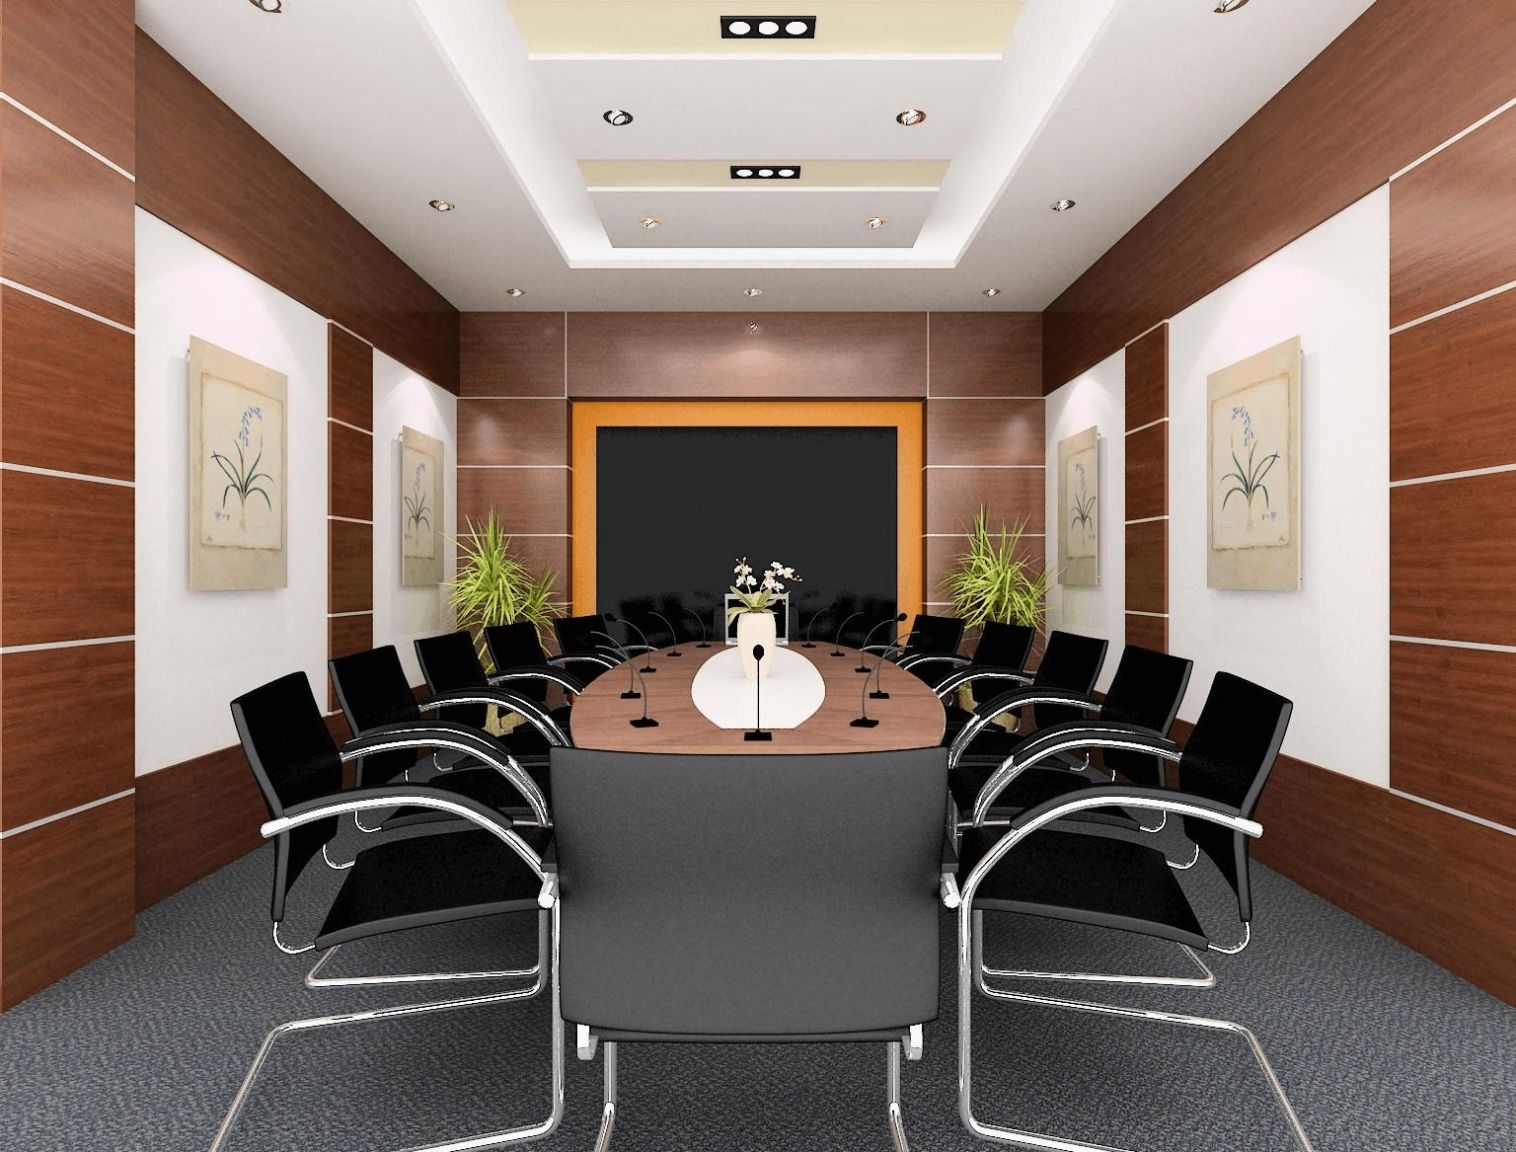 Cân nhắc về không gian văn phòng để lựa chọn kích thước bàn họp phù hợp